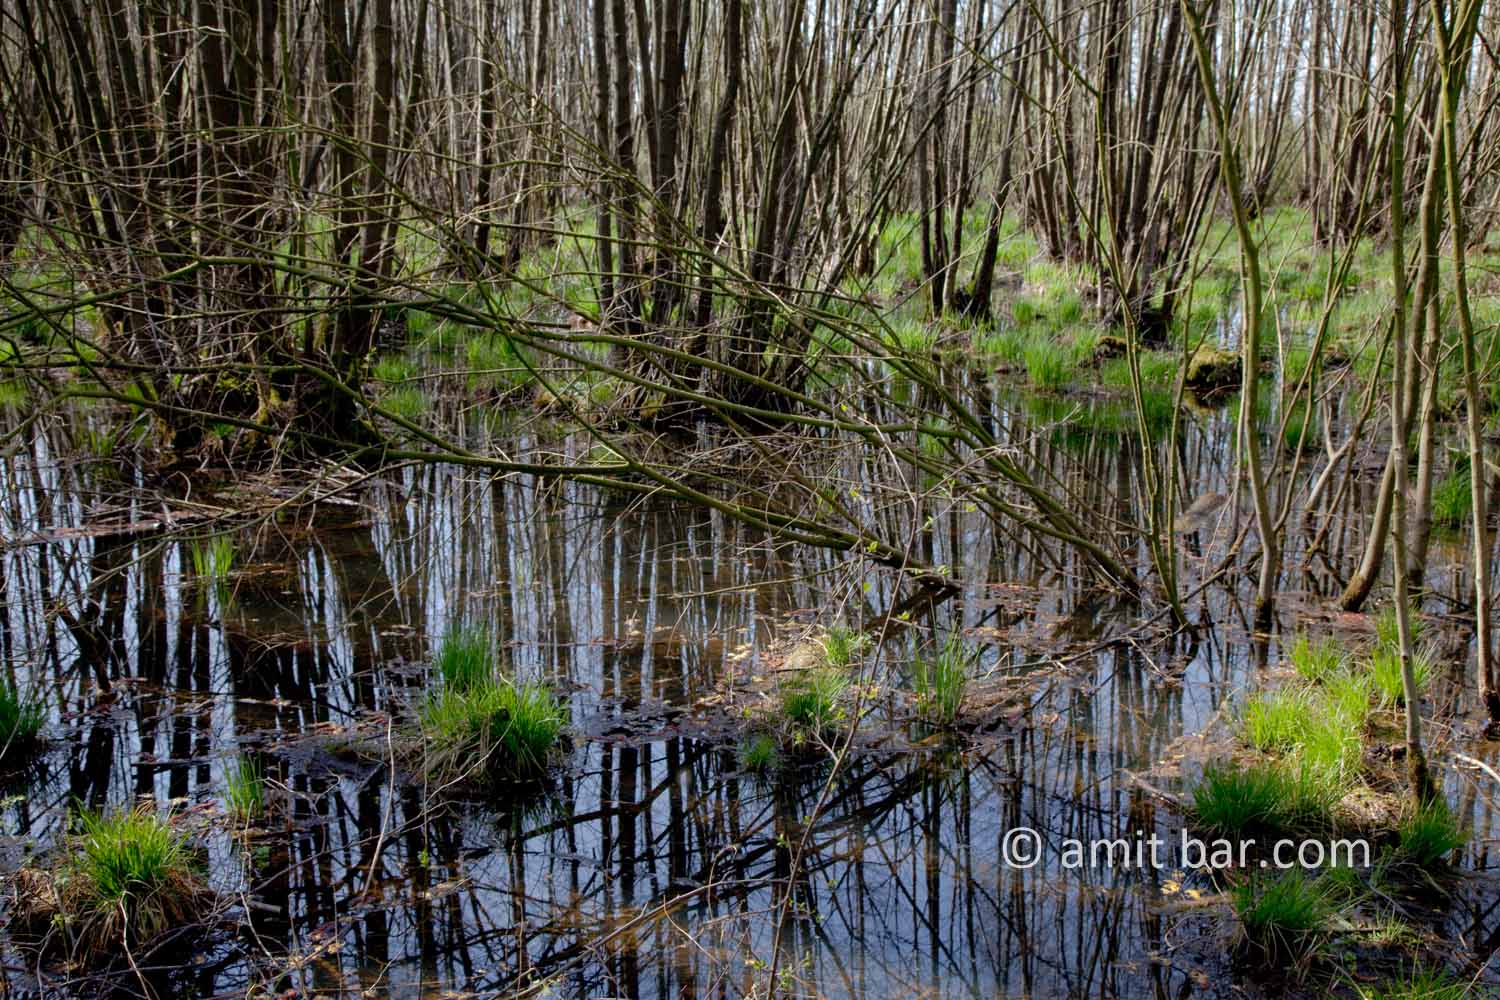 Swamp III: Swamp in Doetinchem, The Netherlands